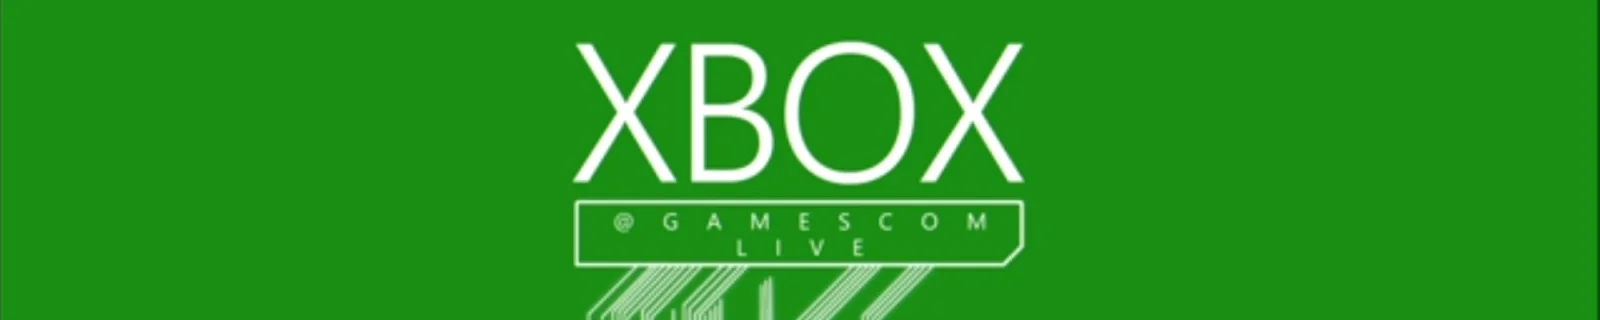 科隆游戏展Xbox Gamescom Live首日直播内容汇总